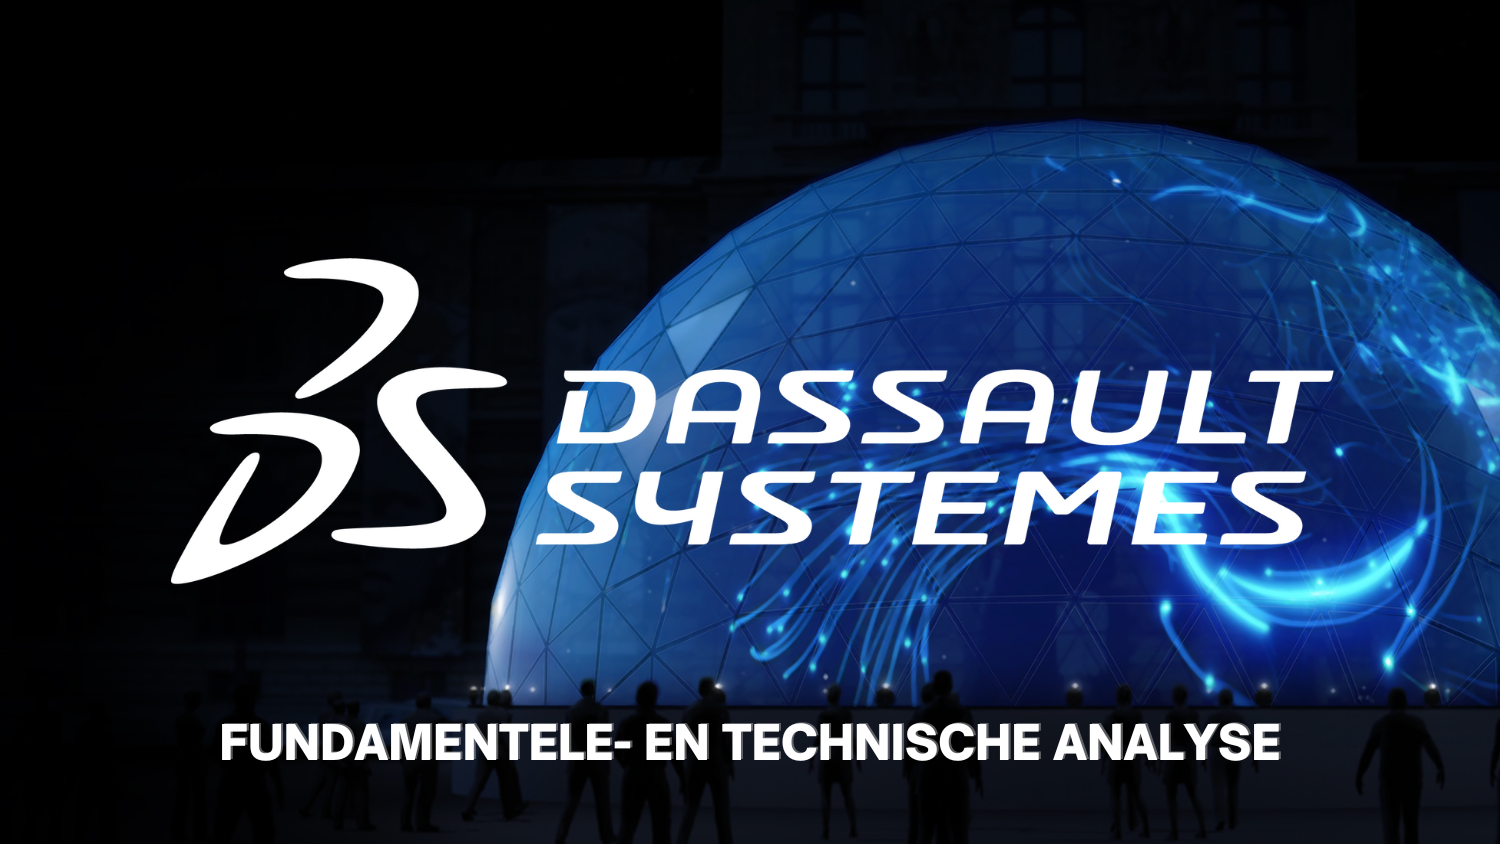 Dassault Systèmes, een Frans softwarebedrijf met potentie?